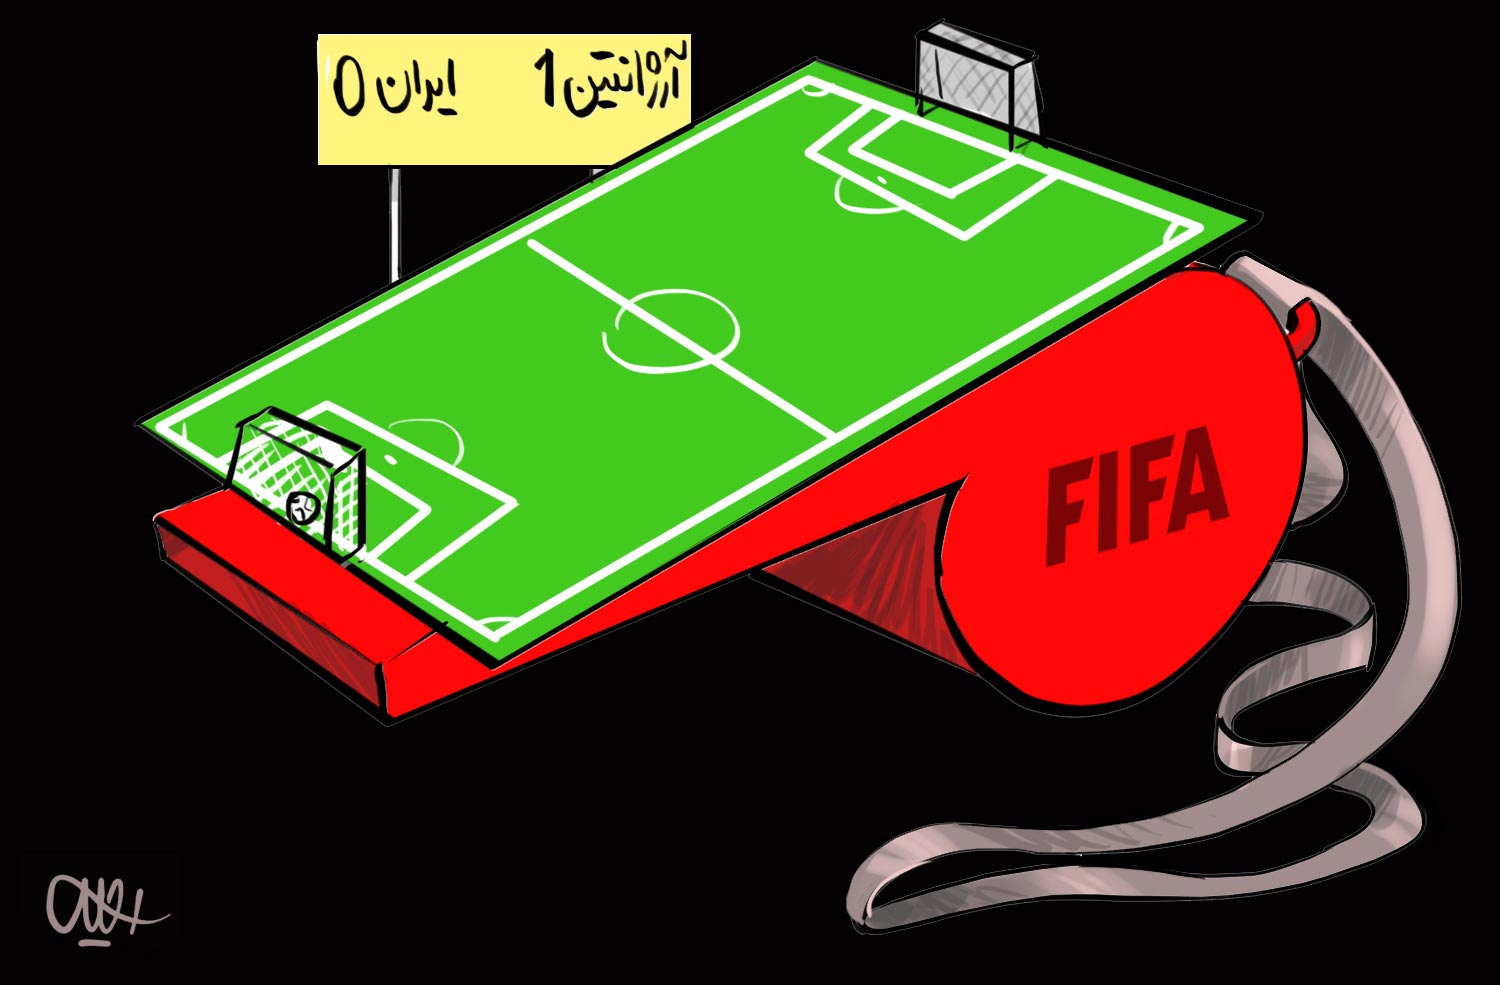 کاریکاتور,دانلود کاریکاتور,عکس کاریکاتور,سوت,داور,فیفا,زمین فوتبال,ایران,آرژانتین,فوتبال,جام جهانی,برزیل,یار دوازدهم,شکست,پیروزی,یک هیچ